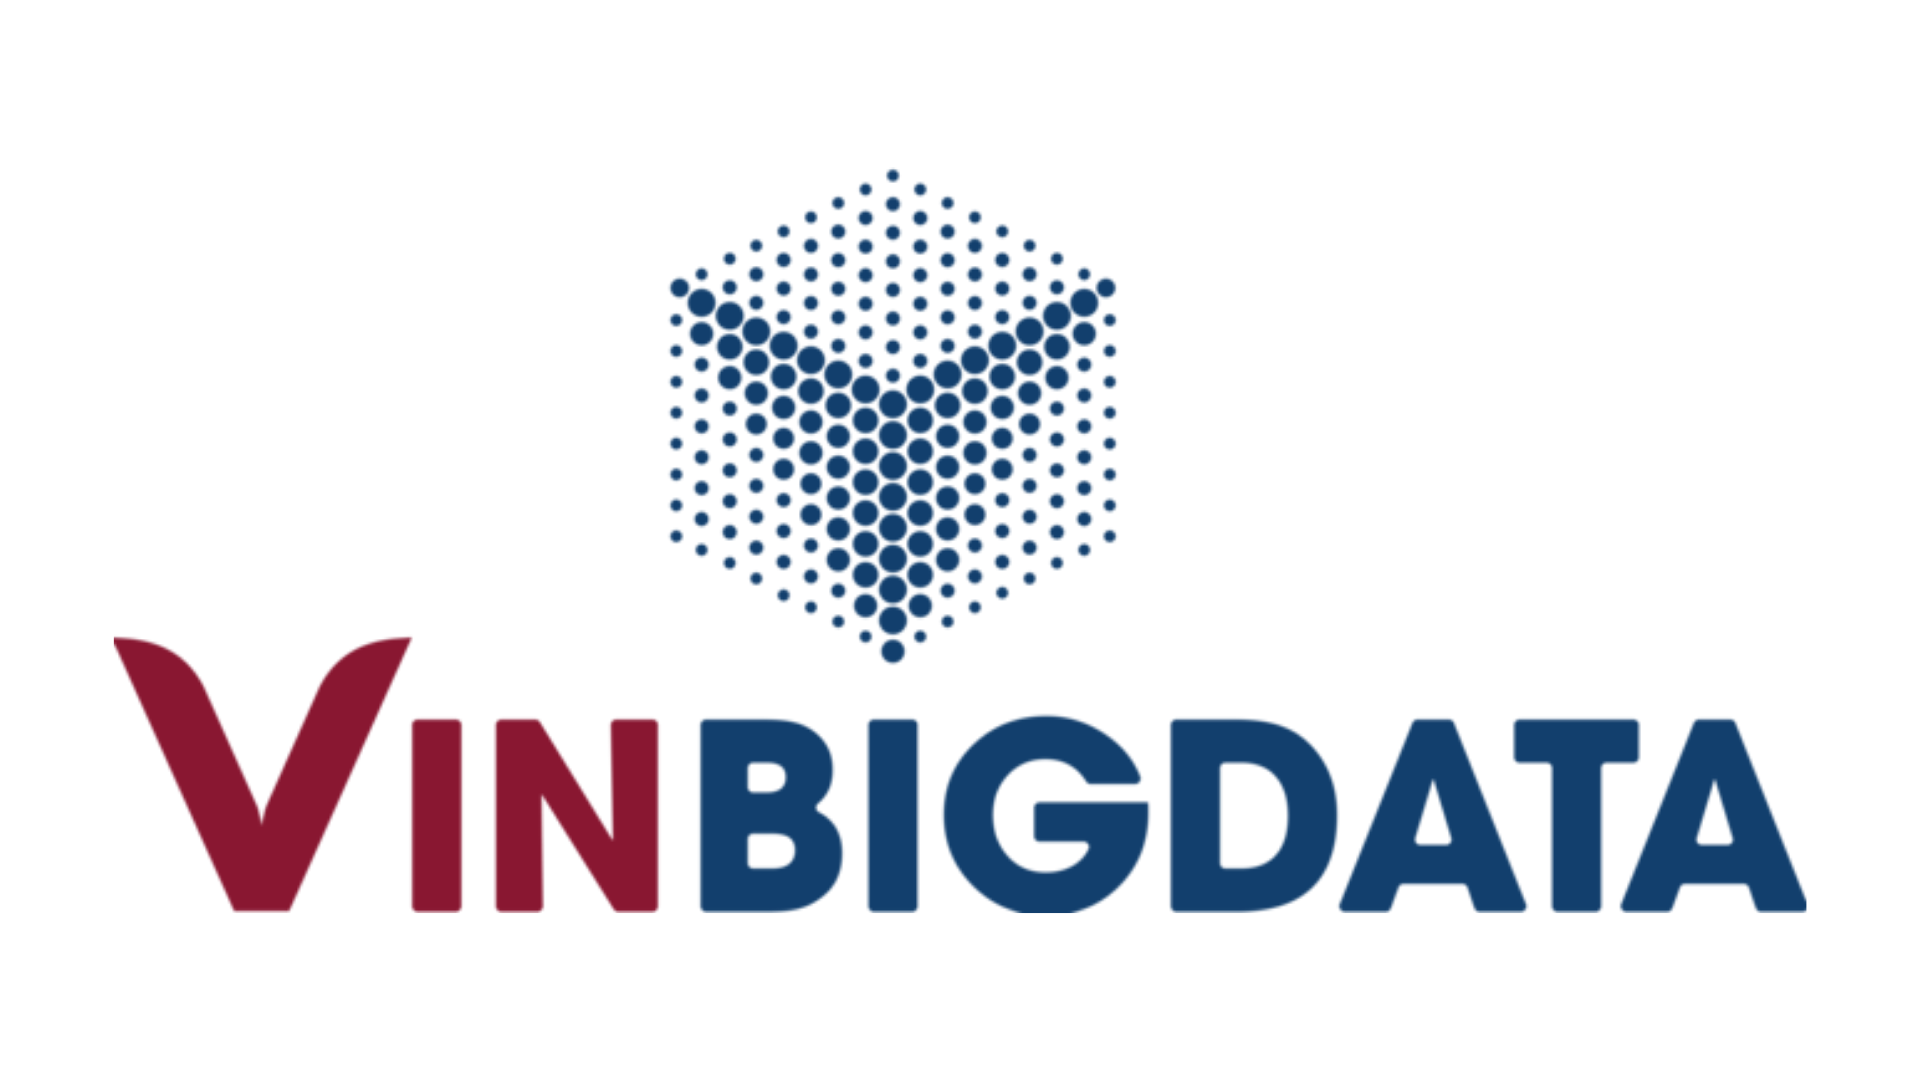 Cơ hội làm việc tại Viện Nghiên cứu Dữ liệu lớn và Công ty cổ phần VinBigdata - SOICT